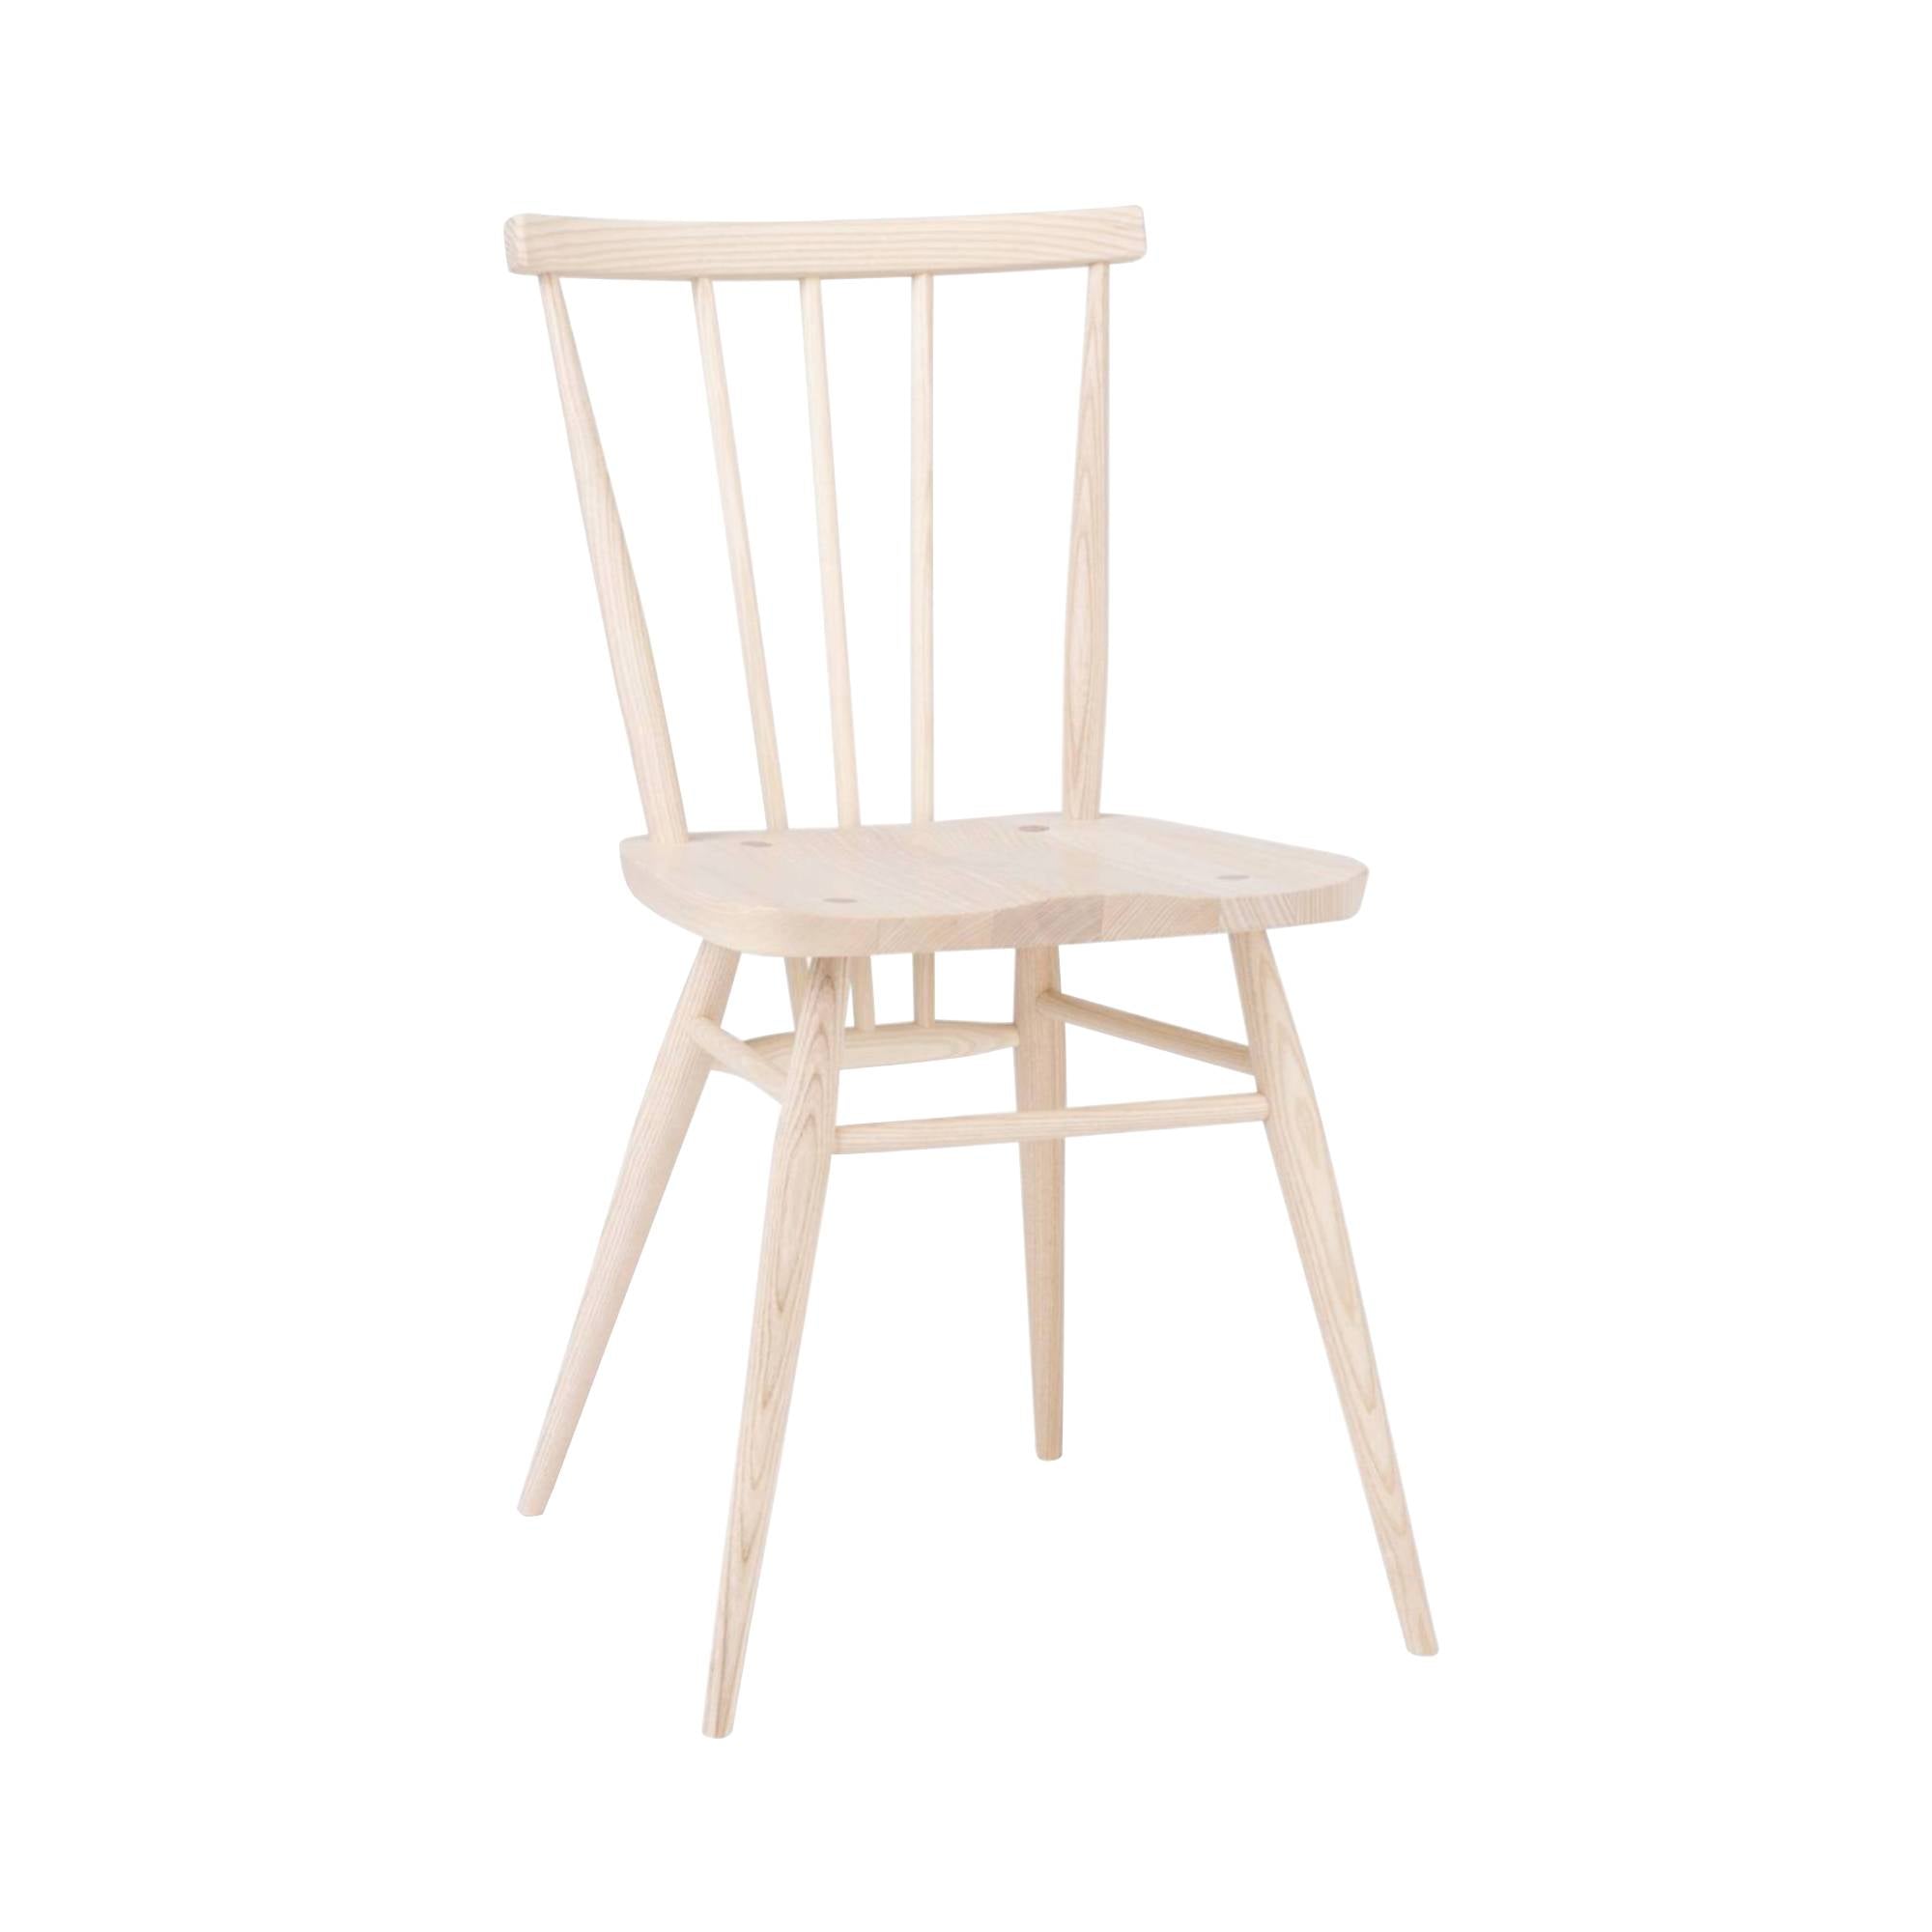 Originals All-Purpose Chair: Natural Ash